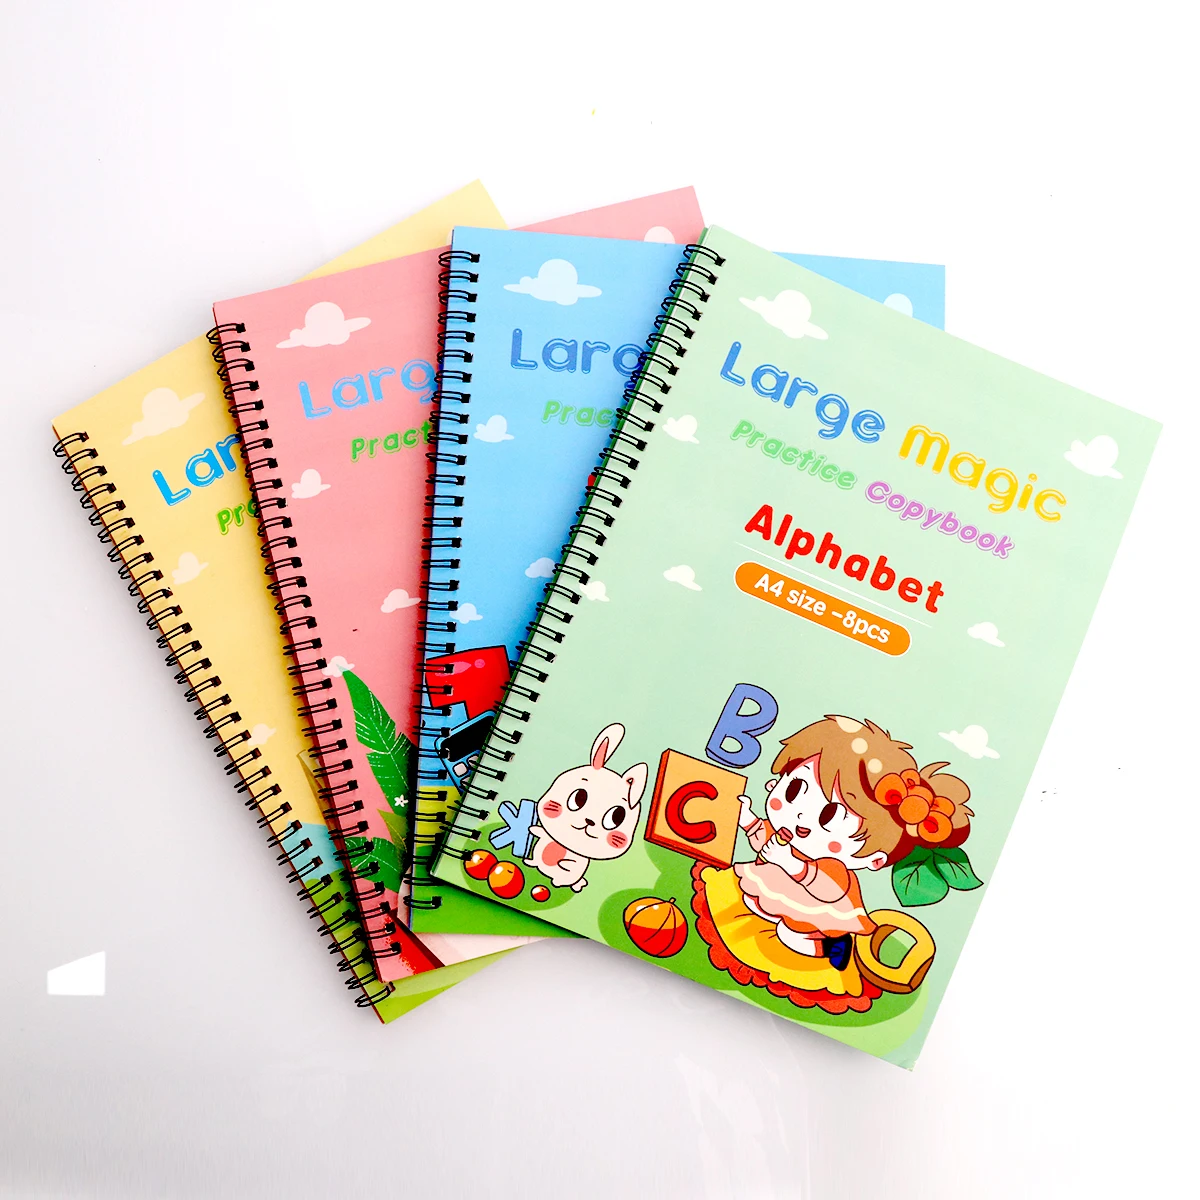 Practice Calligraphy notebook / Tracing book for preschoolers